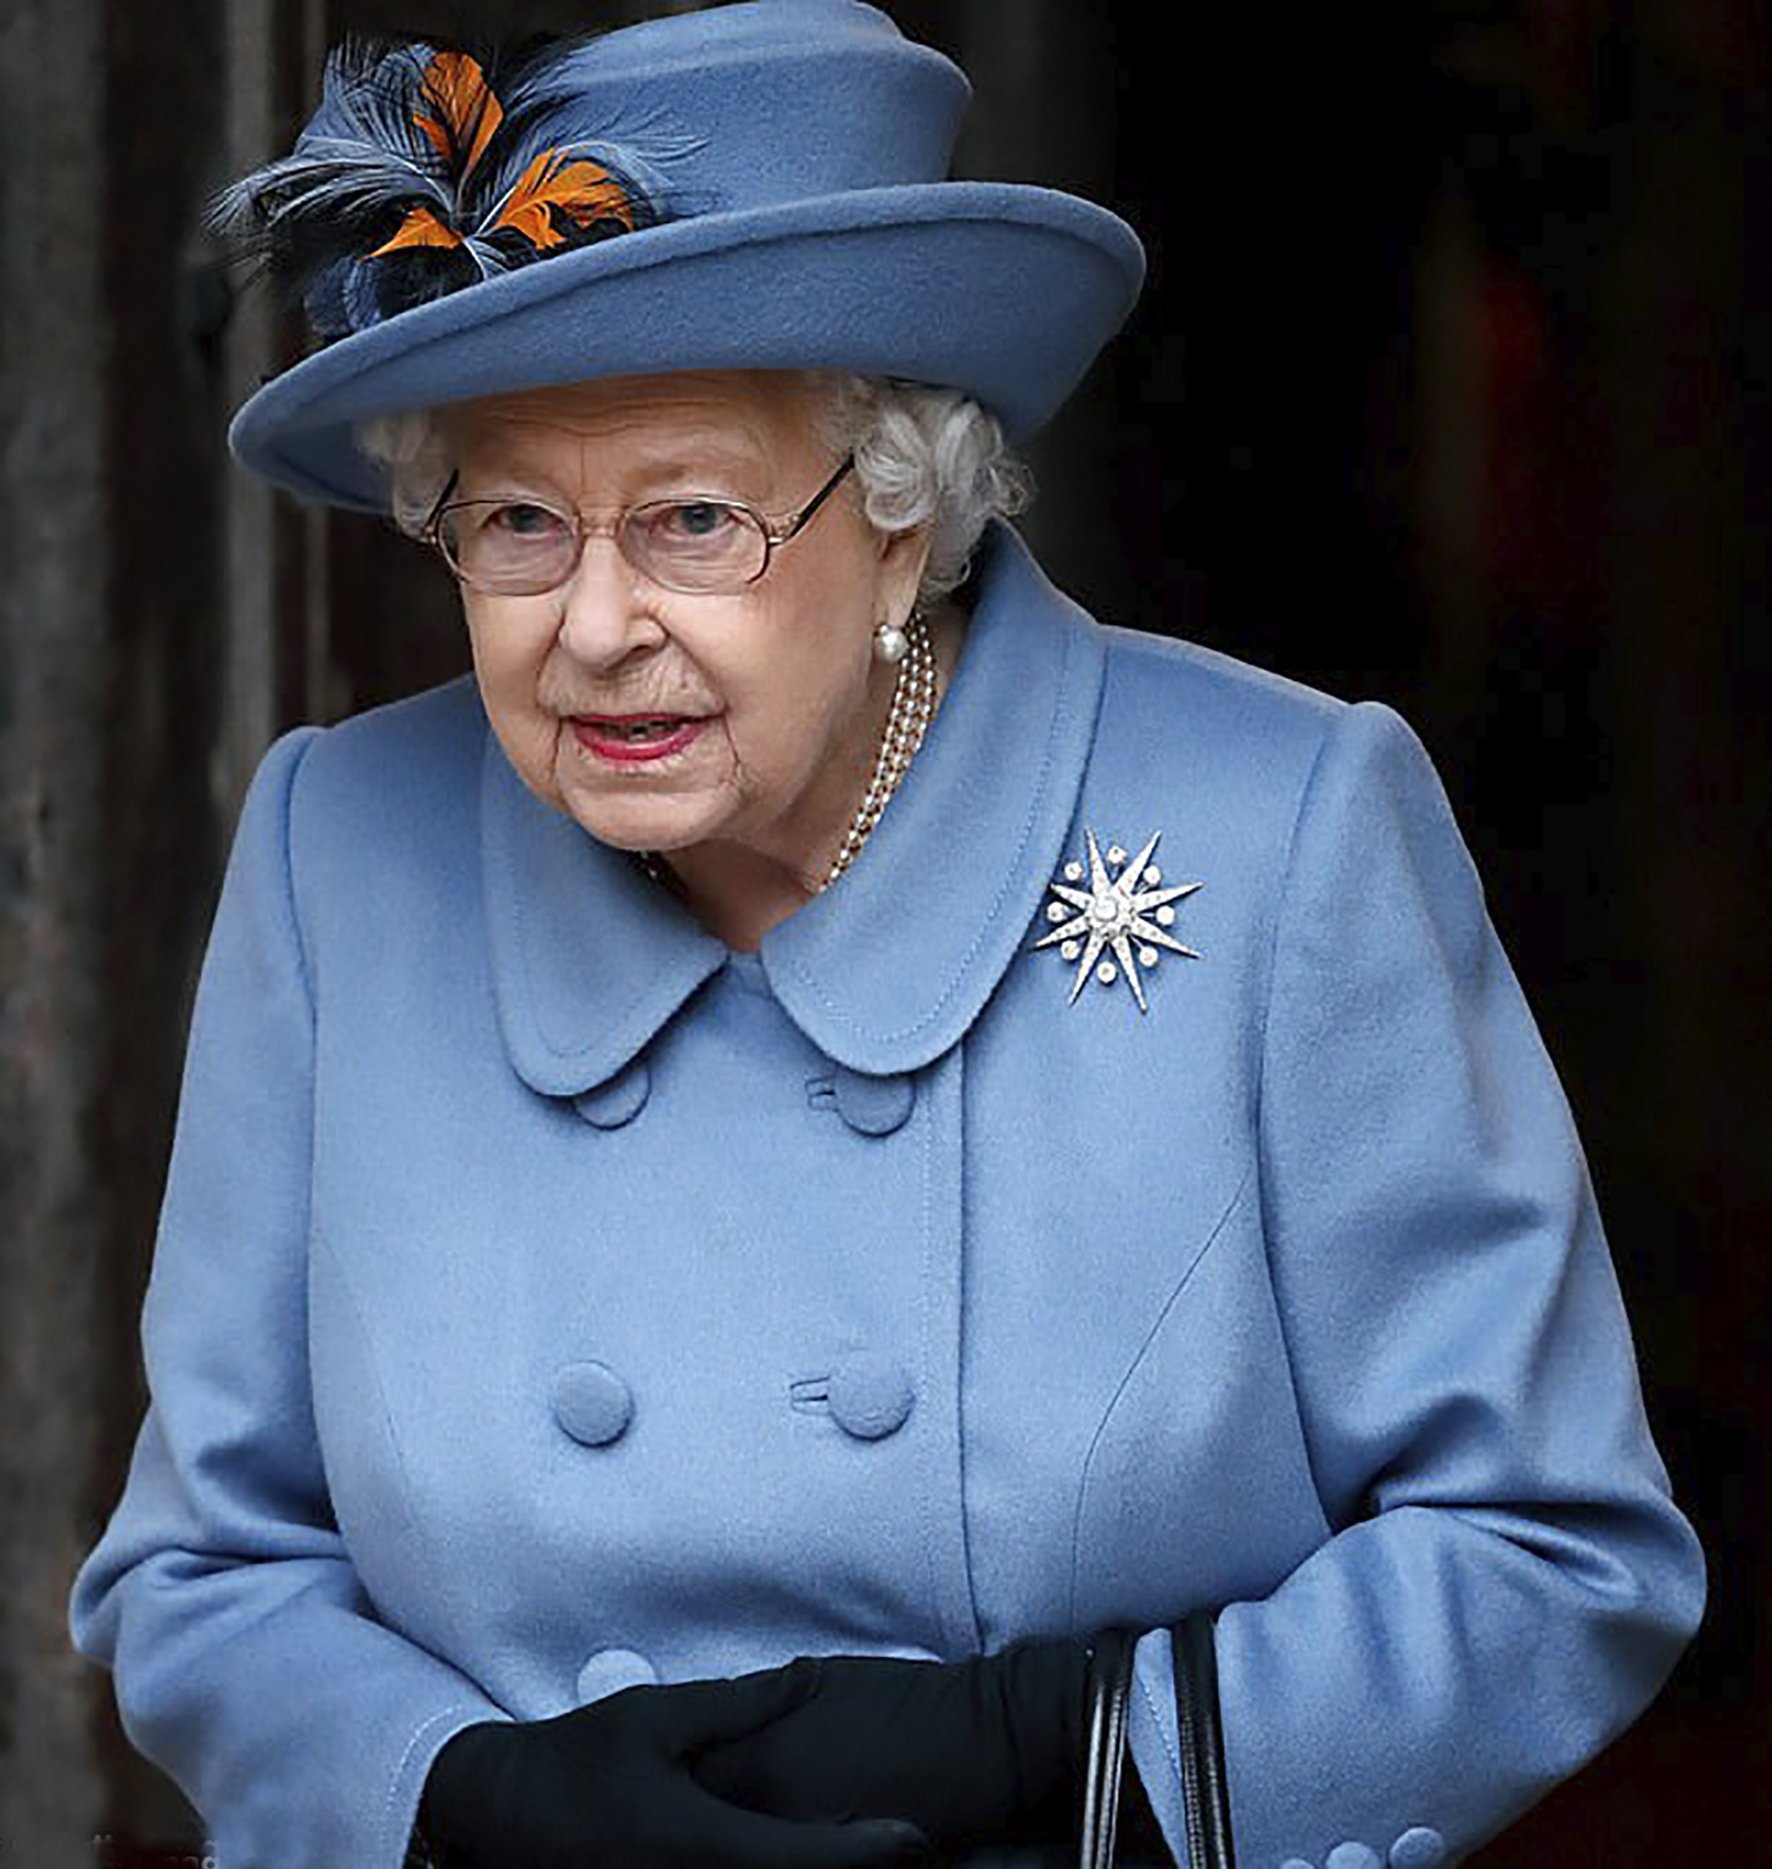 Kraliçe II.Elizabeth, Guinness Dünya Rekoru kırmaya devam ediyor!